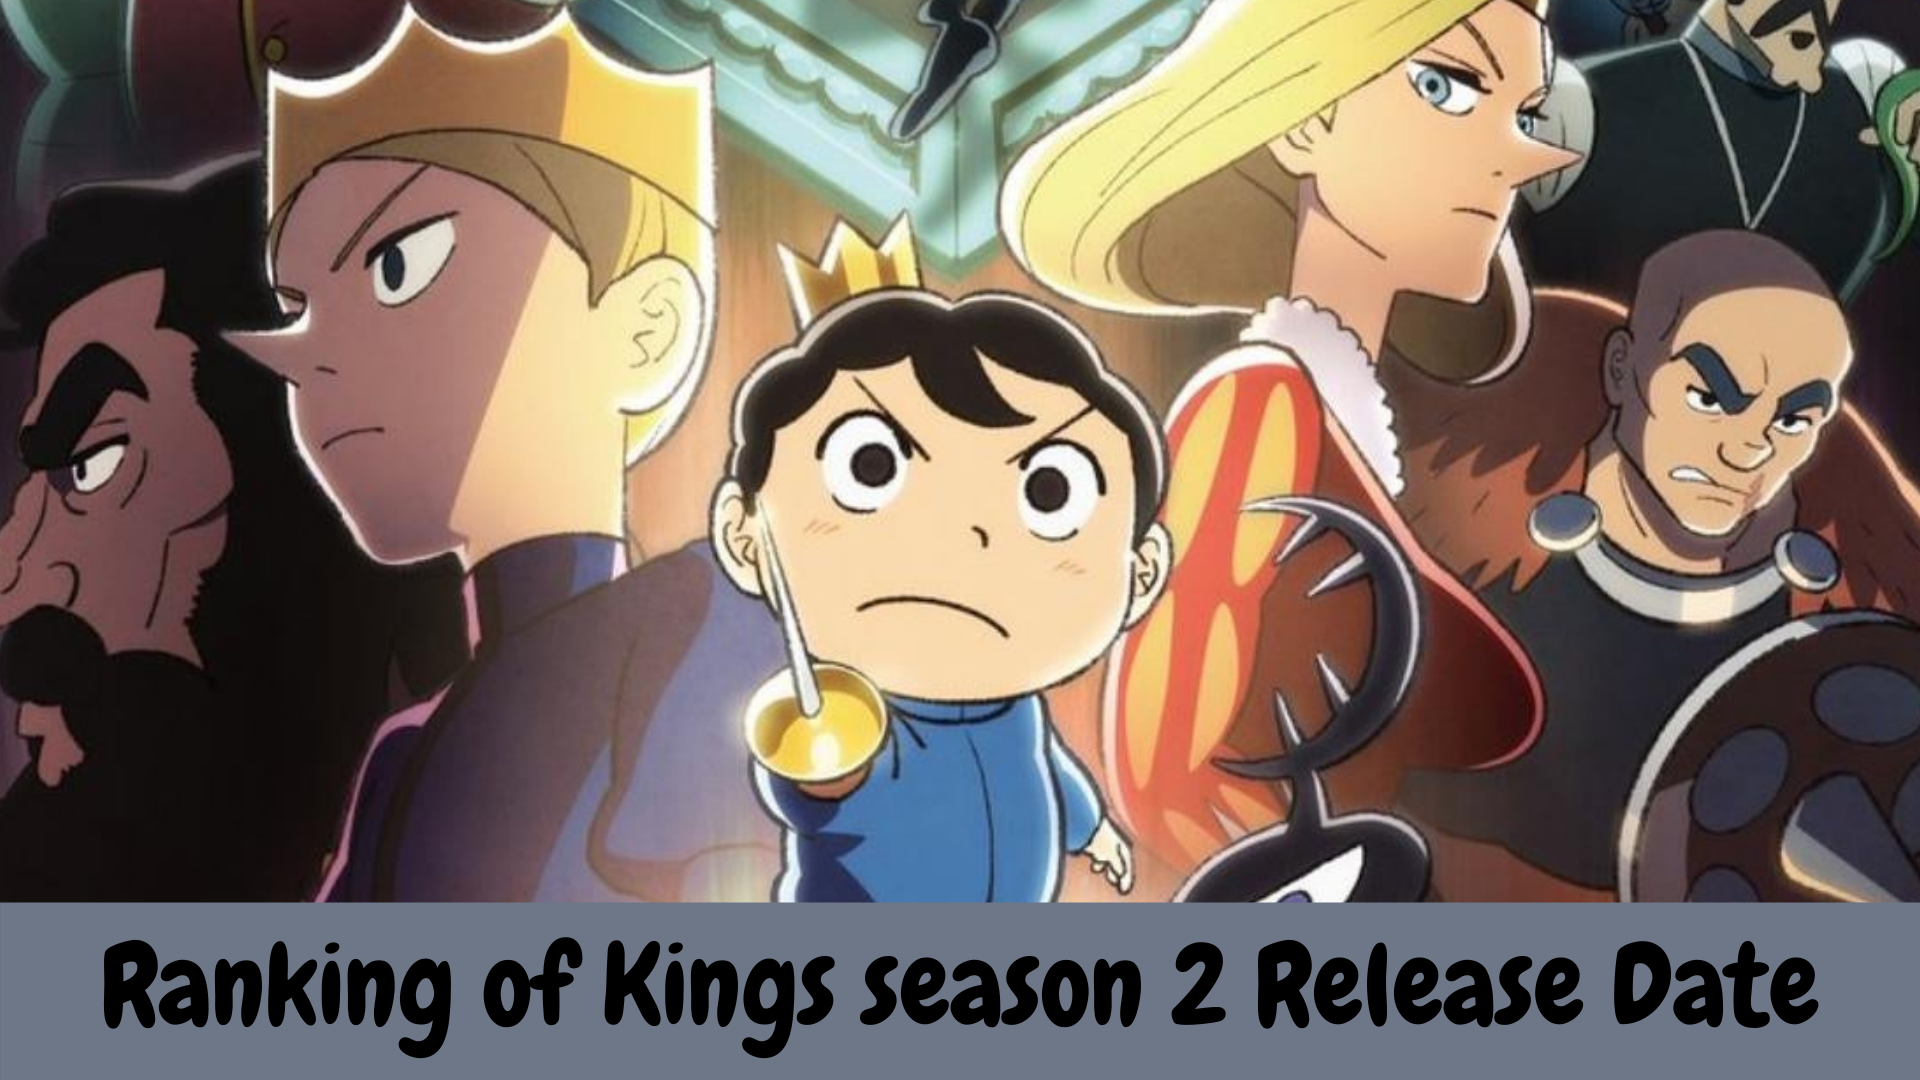 Ranking of Kings season 2 Release Date